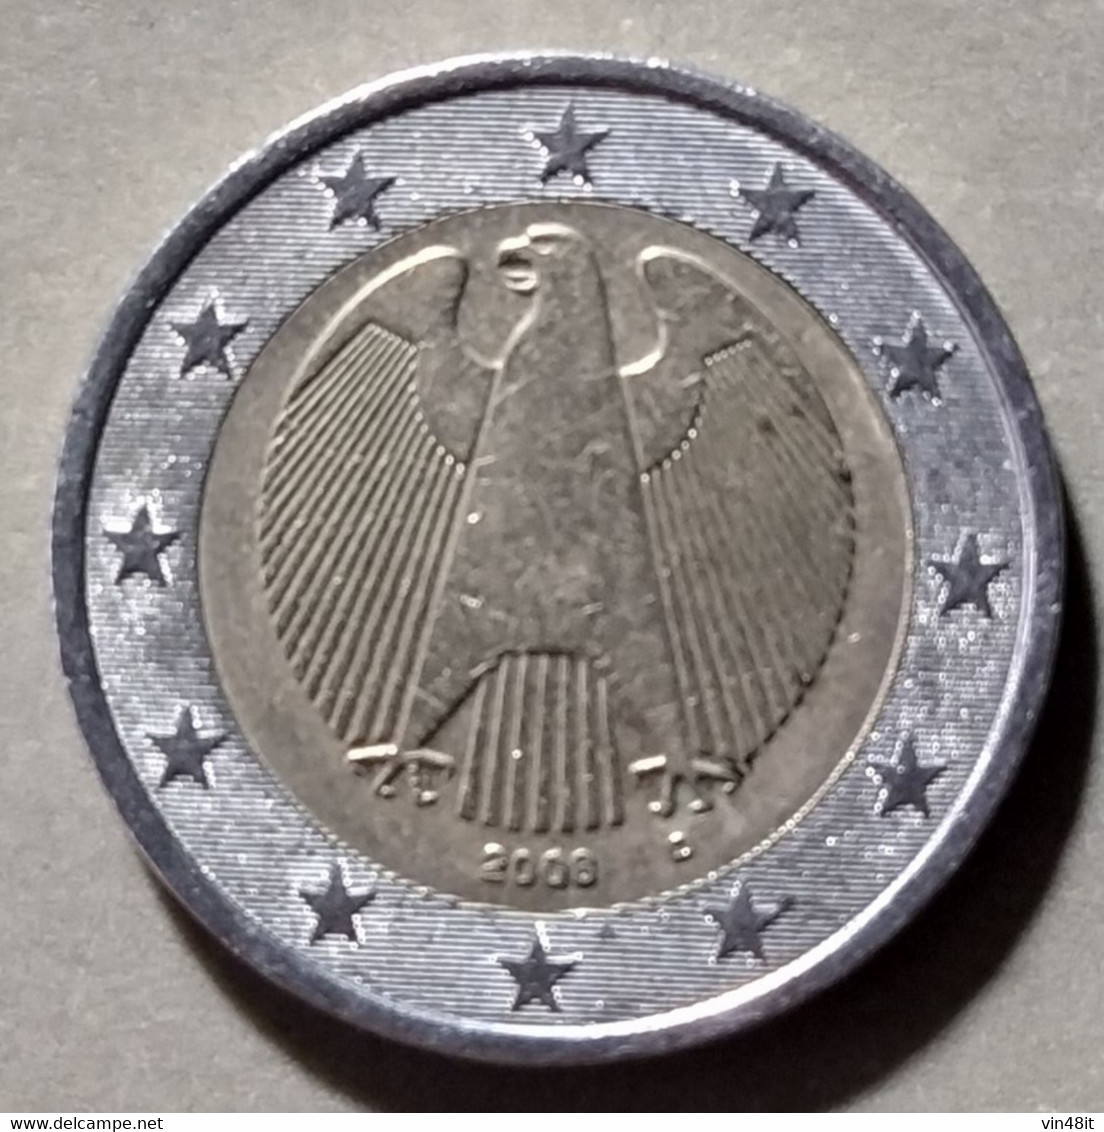 2008   - GERMANIA   - MONETA IN EURO  - DEL VALORE DI  2,00 EURO - USATA - Germania